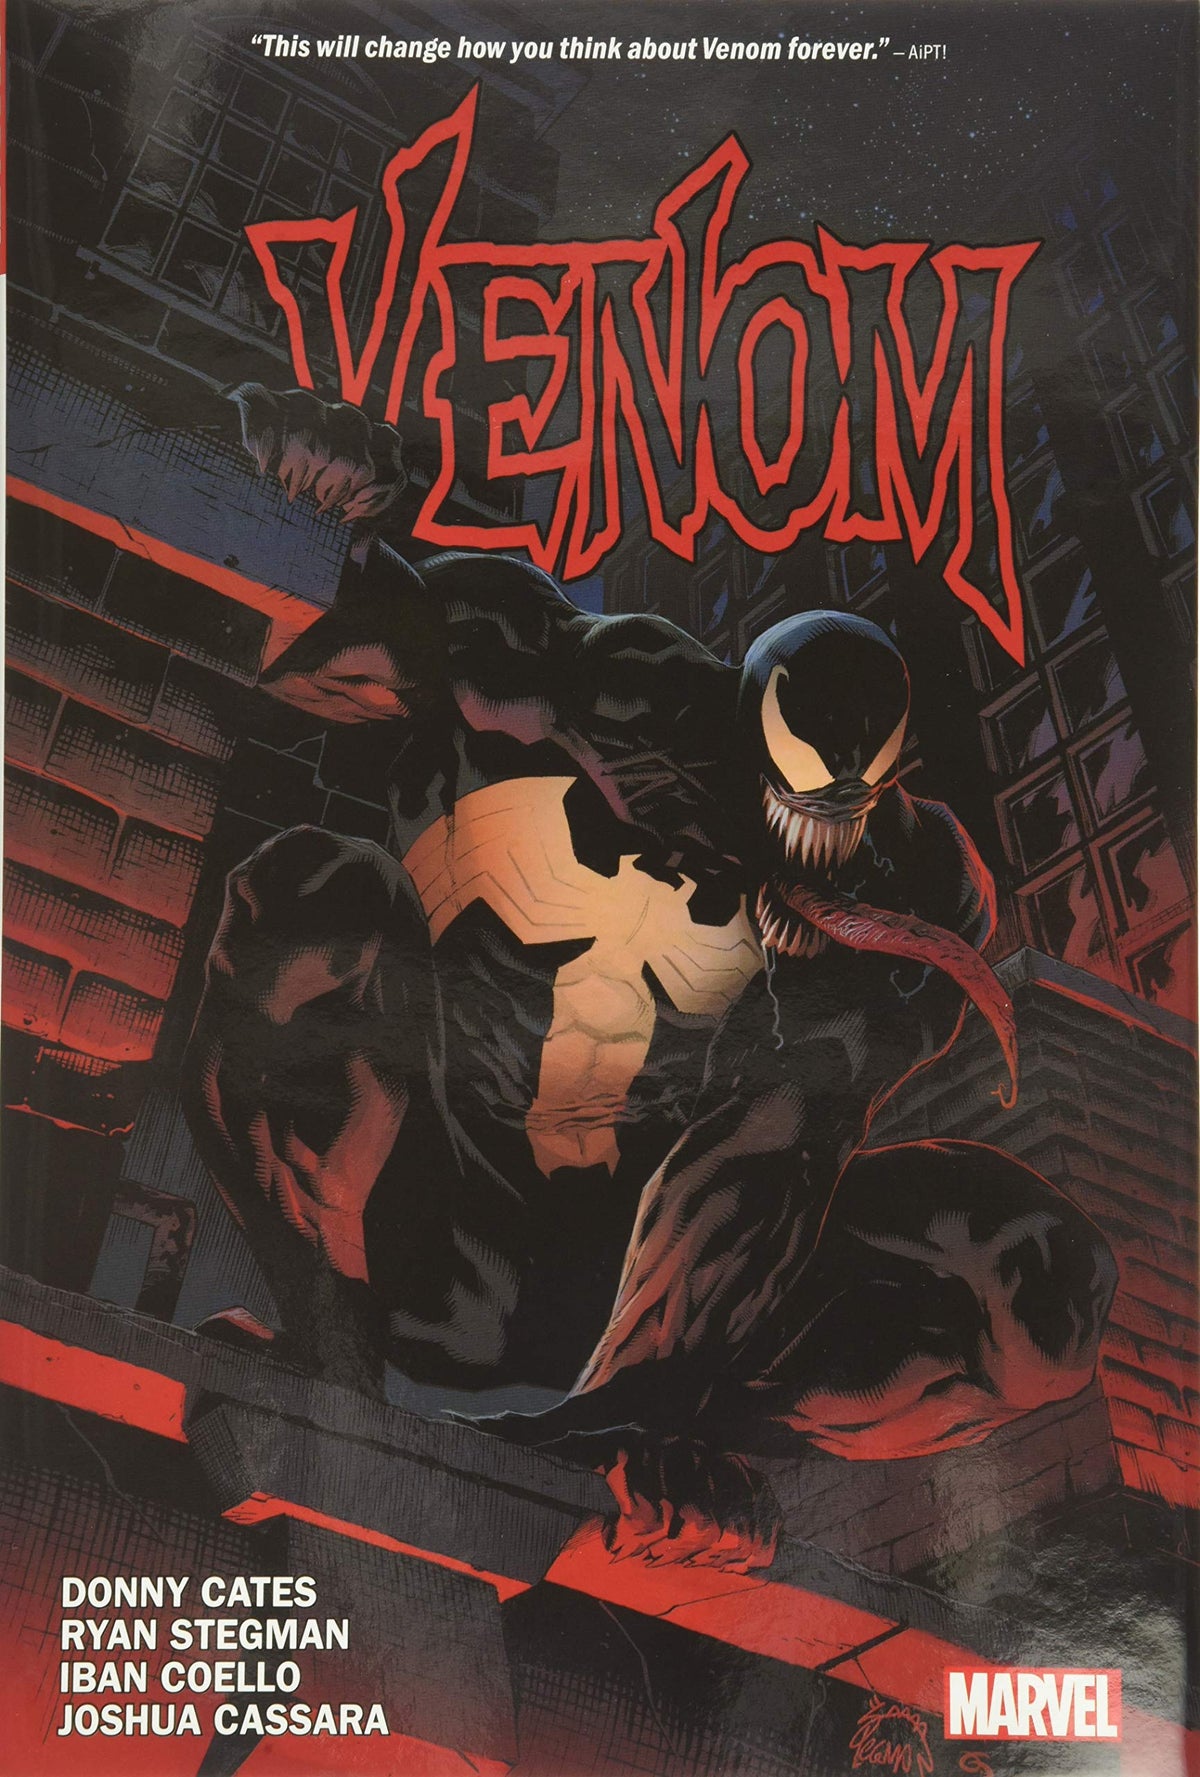 Venom by Donny Cates Vol. 1 - Third Eye